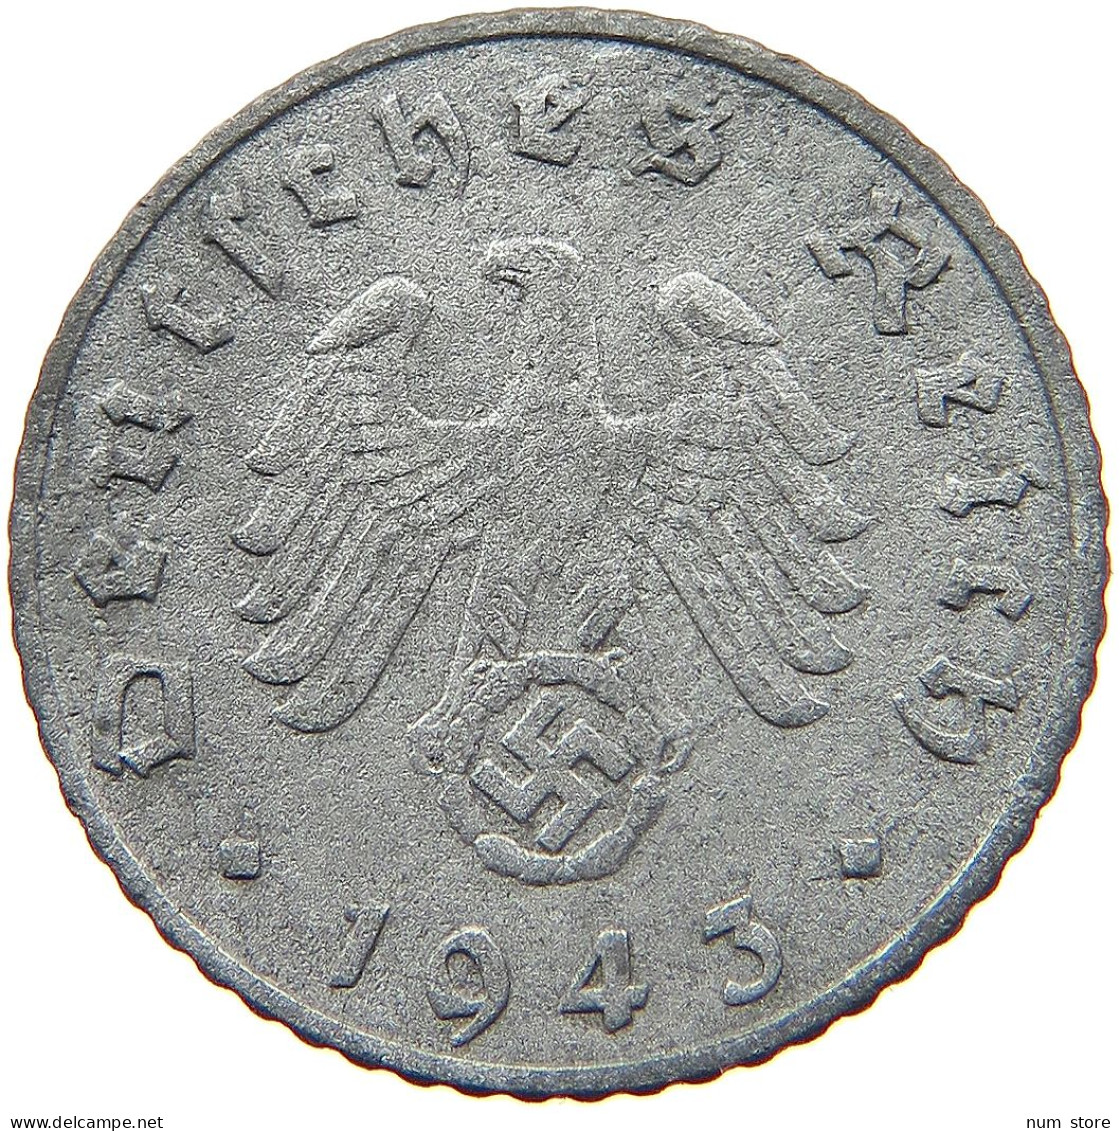 GERMANY 5 REICHSPFENNIG 1943 E #s081 0151 - 5 Reichspfennig